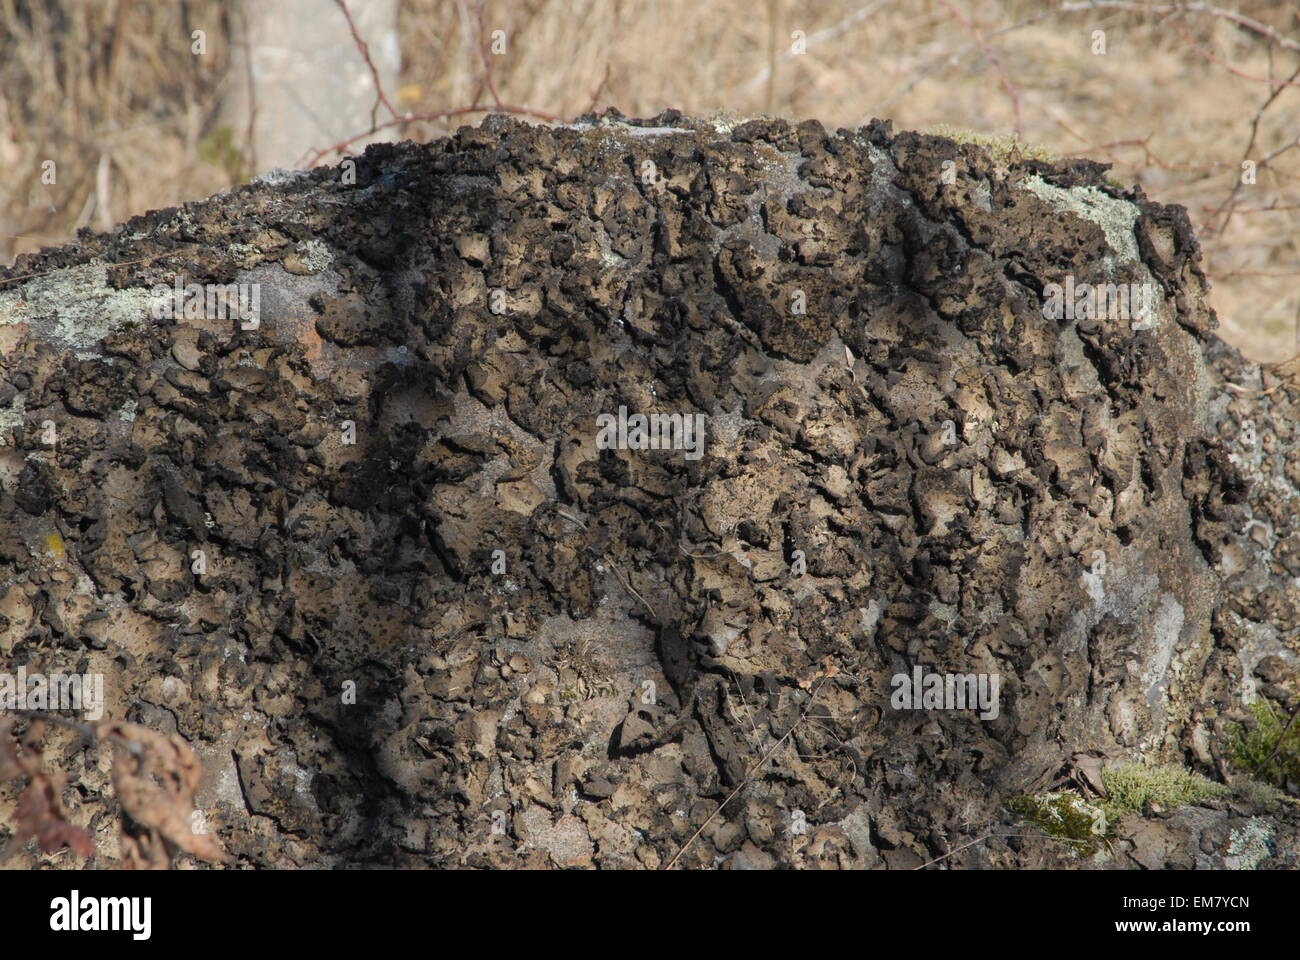 Stone covered in lichen Stock Photo